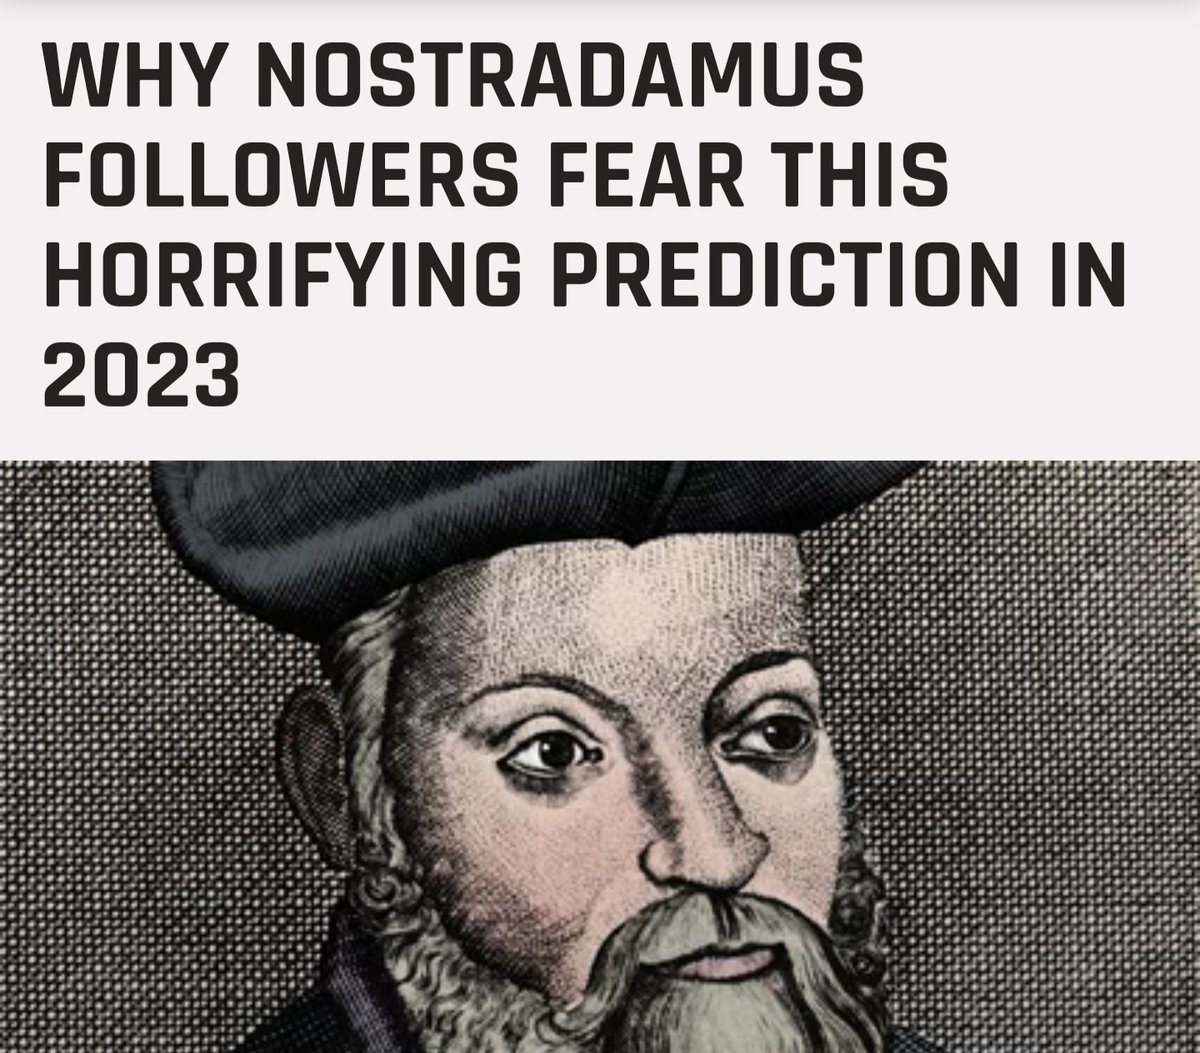 Nostradamus'un 2023 tahmini dünyayı sonsuza dek değişecek büyük bir çatışma ile başlarlar, 'Yedi aylık Büyük Savaş insanlar kötülükten öldü.' 'Dünya Deccal'i görecek ve birçok insanın ölümüyle sonuçlanan büyük savaşlar başlatacak' 3 Dünya Savaşı'na mı işaret ediyor ne dersiniz...